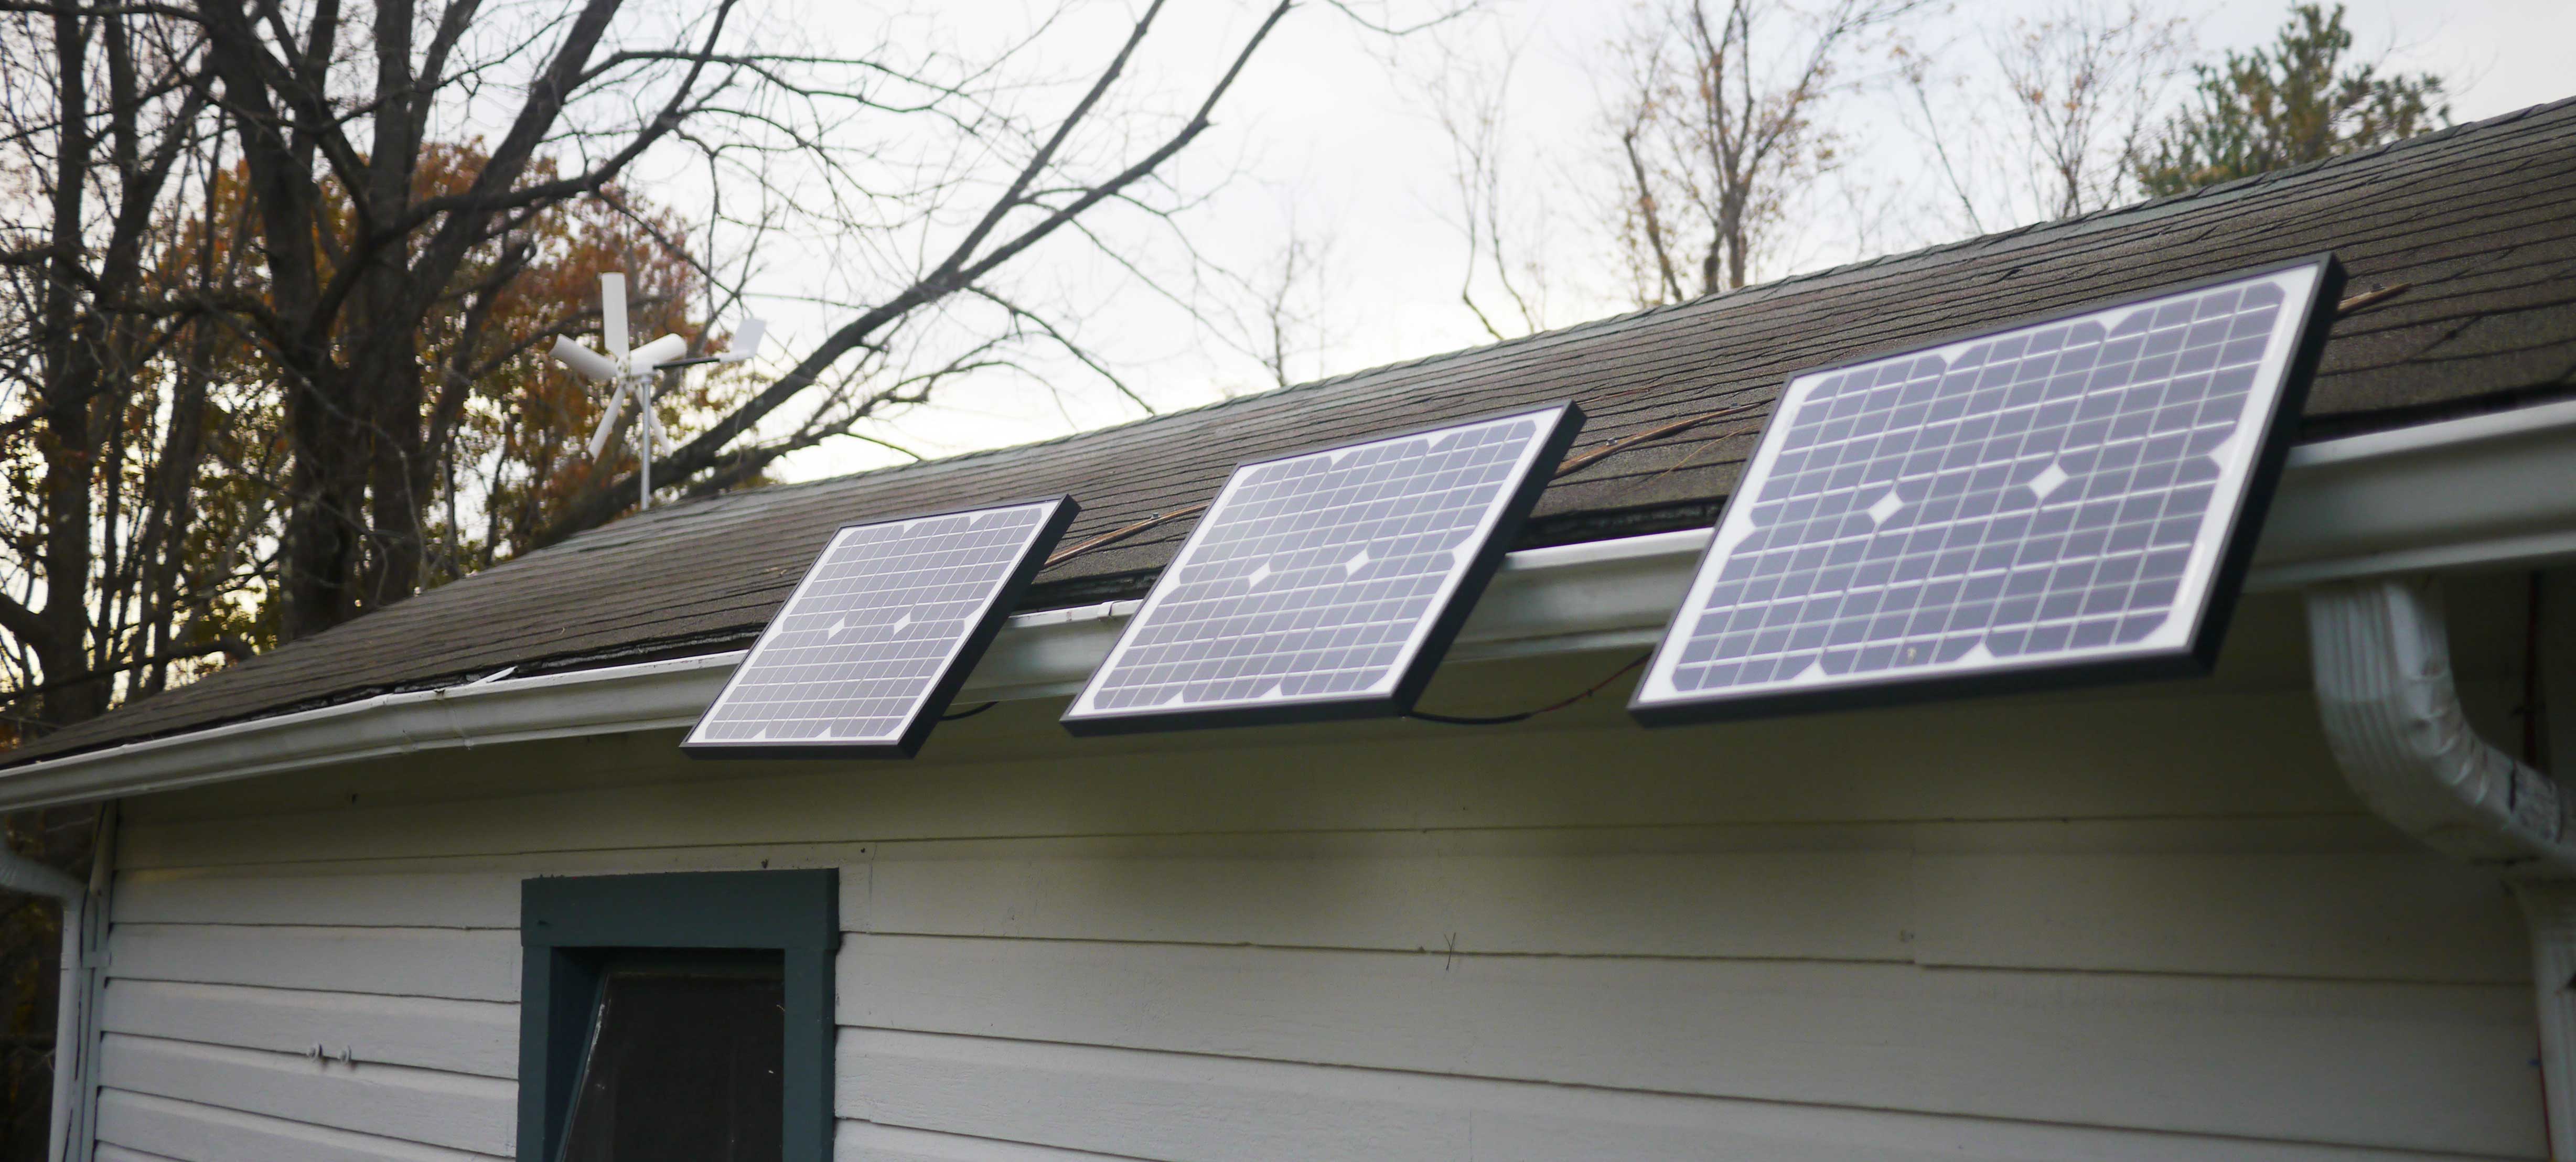 Total 60 Watt Rated, 5.5 sq ft Three Solar Pannels